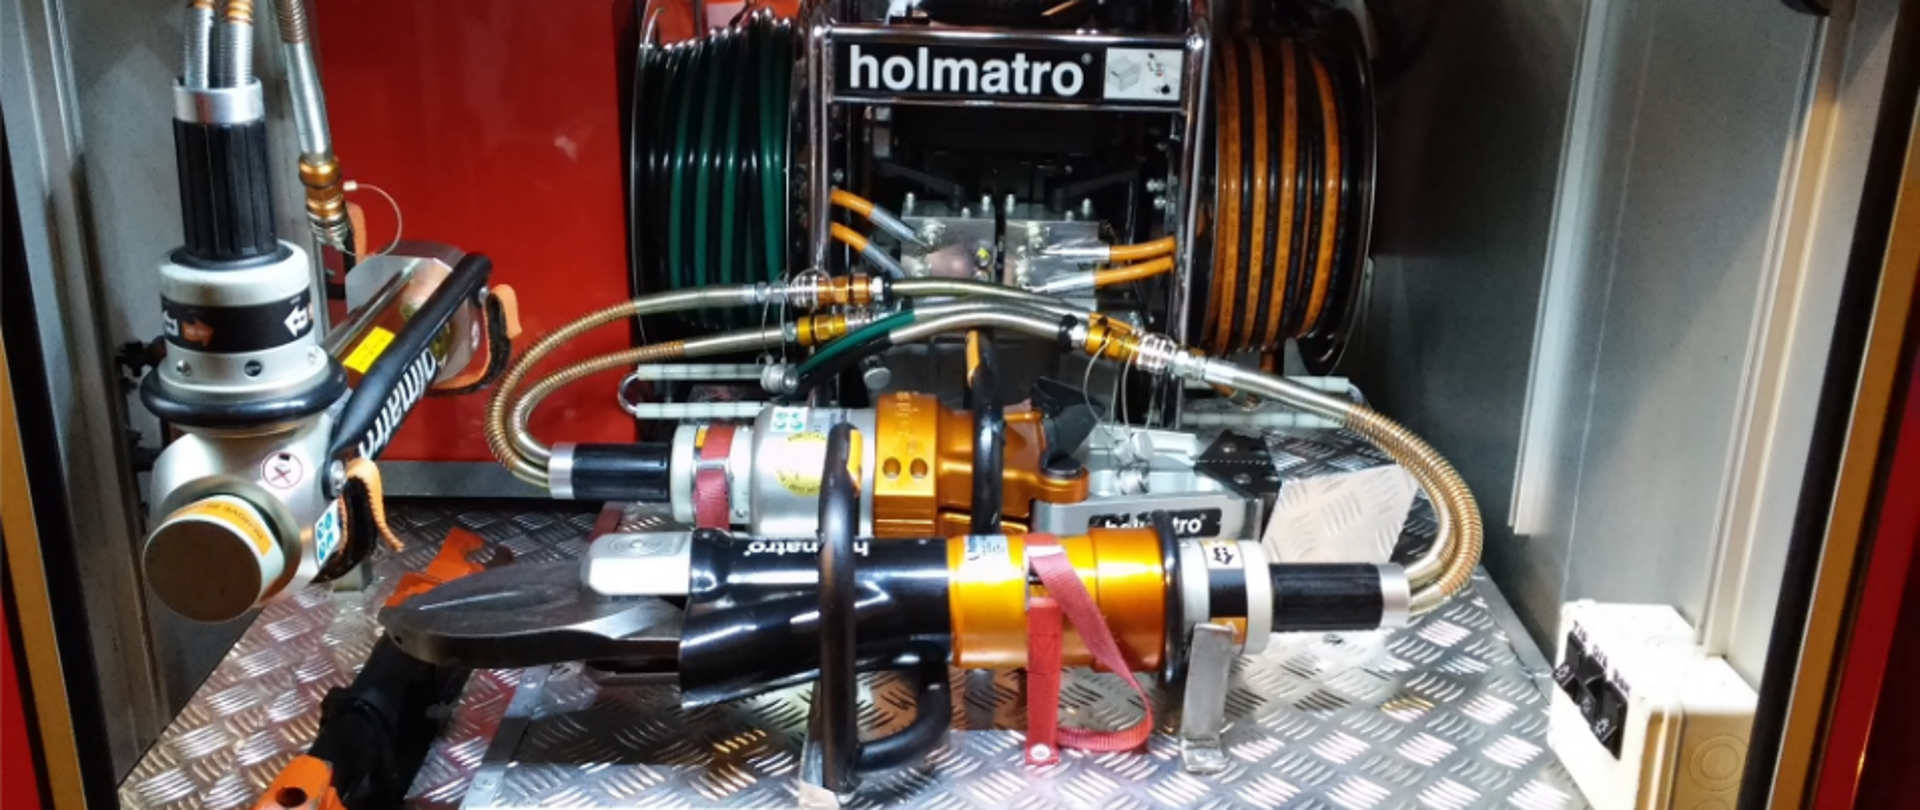 Fotografia przedstawiająca zestaw narzędzi hydraulicznych holmatro służących do rozcinania pojazdów podczas zdarzeń z samochodami.